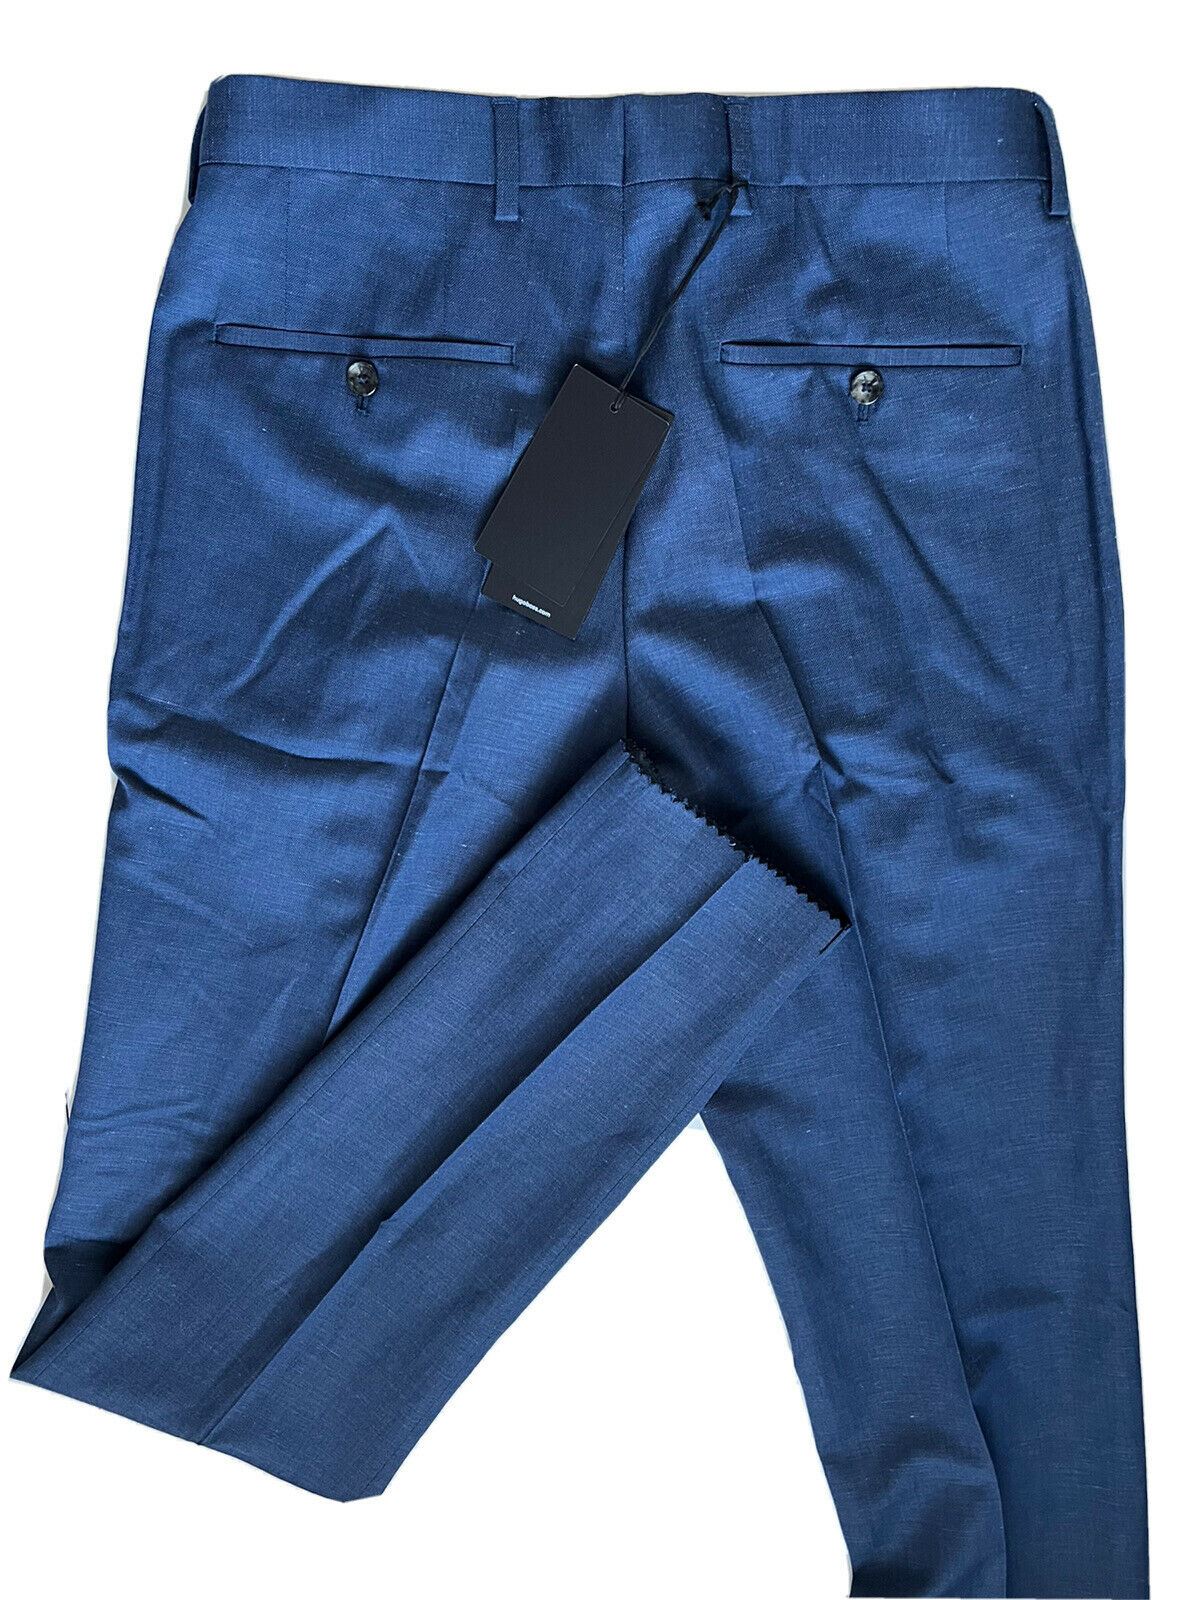 Neu mit Etikett: 245 $ Boss Hugo Boss Genesis4 Herren-Anzughose aus Wolle/Leinen in Blau, Größe 30 US